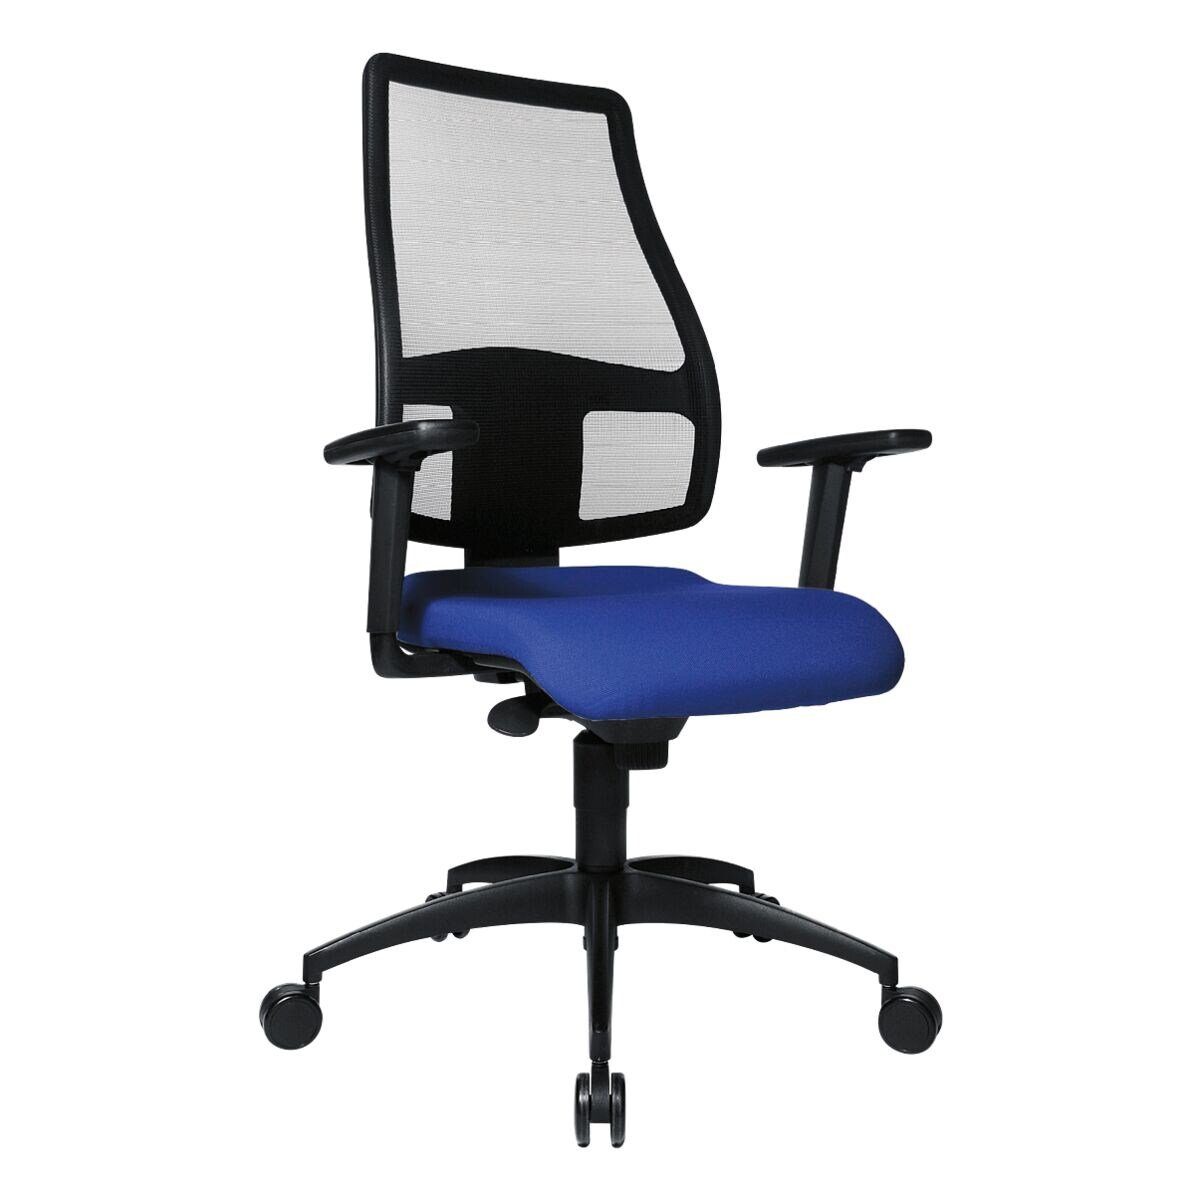 (ohne ergonomischem | und TOPSTAR schwarz Net, blau Syncro Netzrücken, Schreibtischstuhl mit Armlehnen) Knierolle